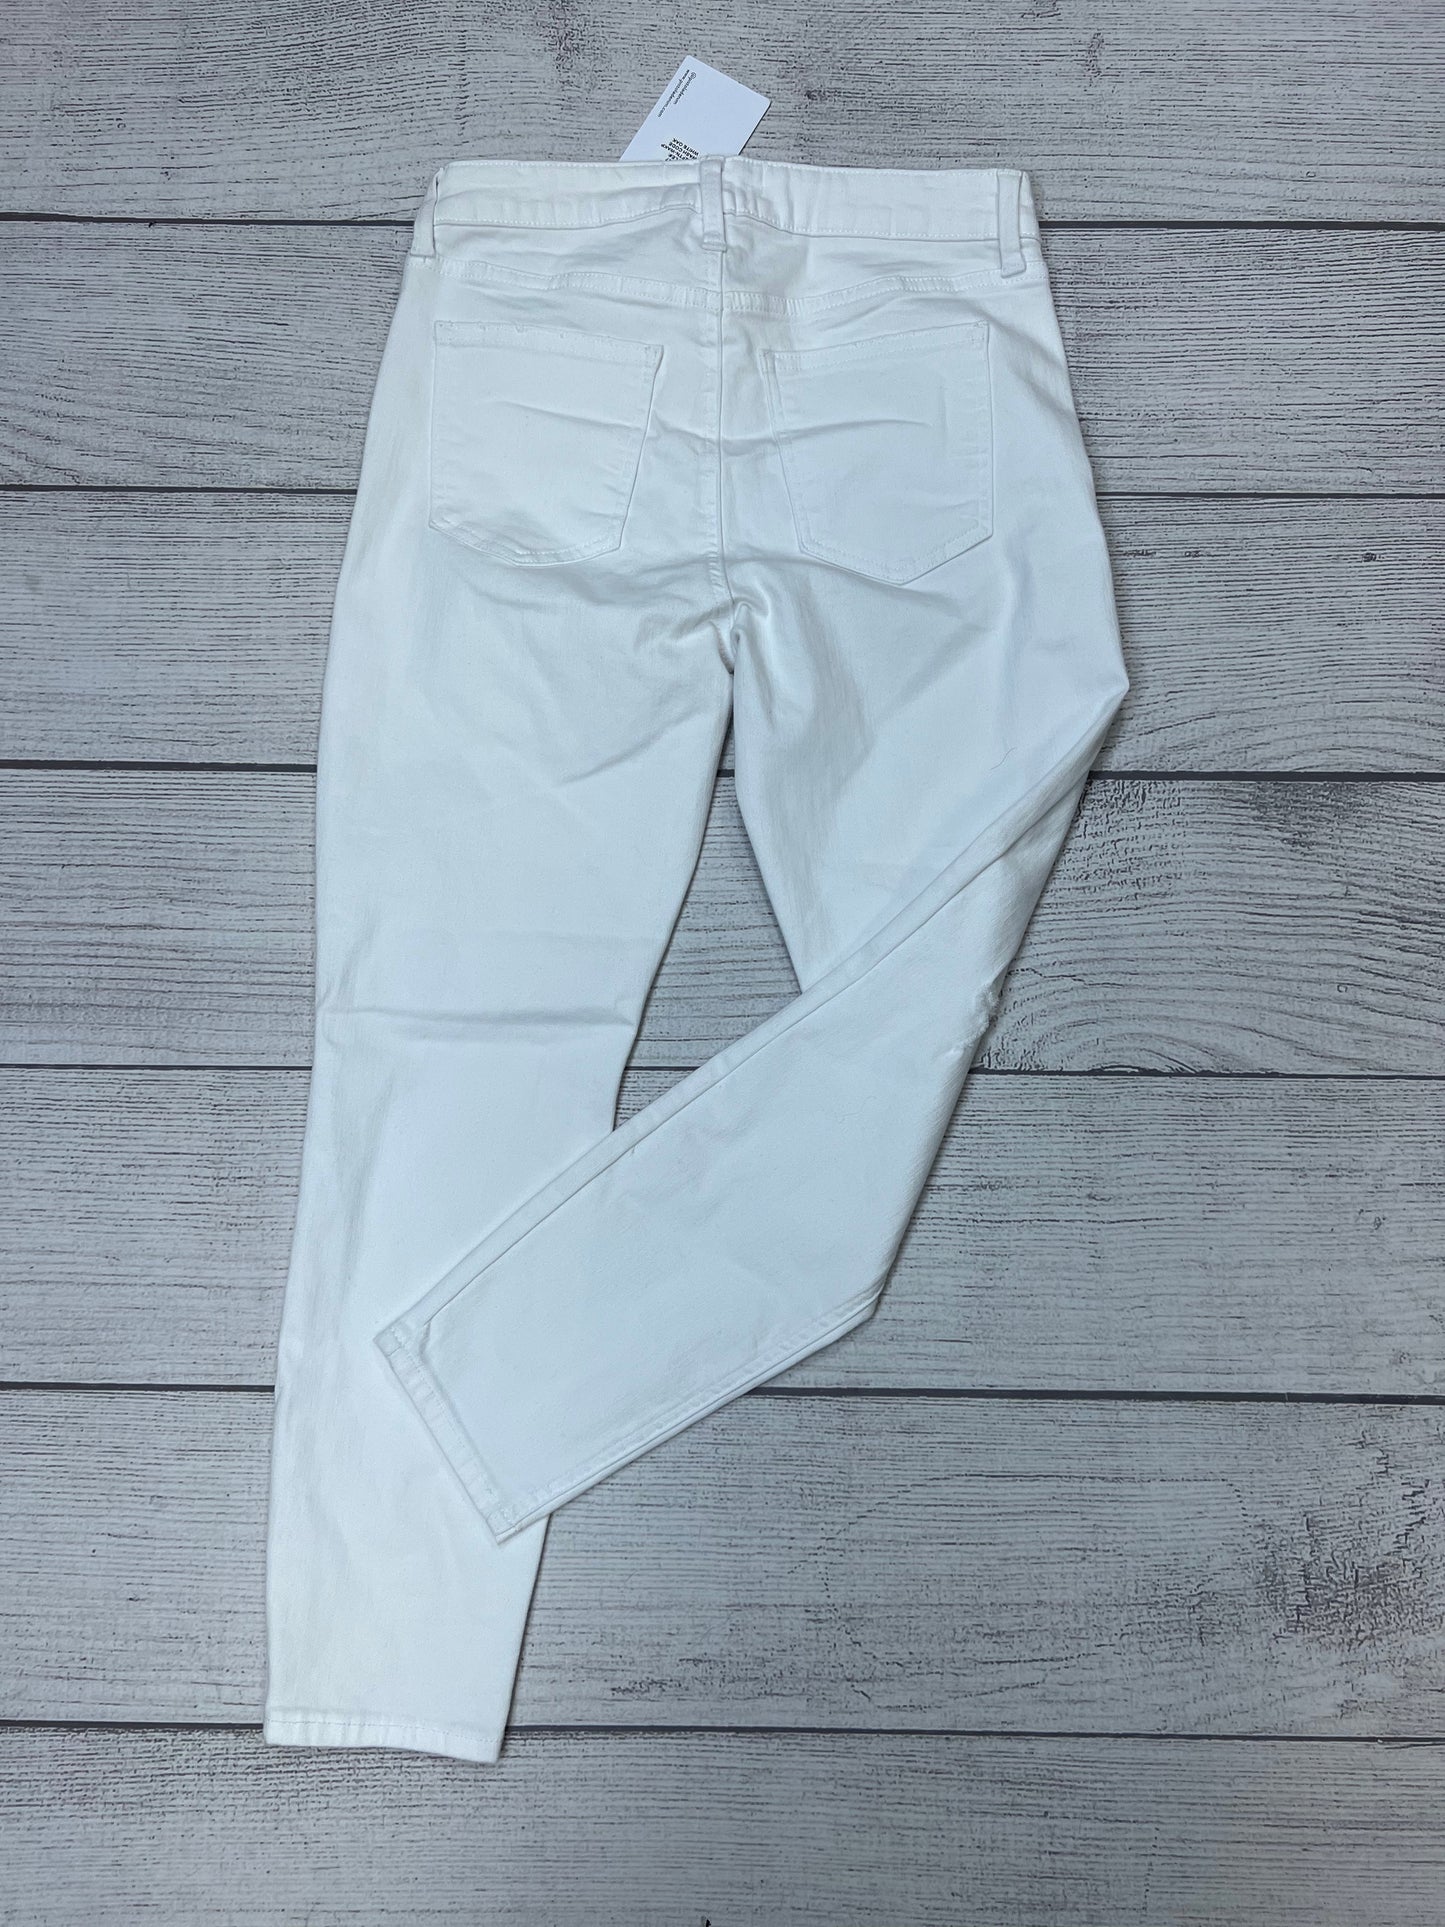 New! White Jeans Designer Pistola, Size 4